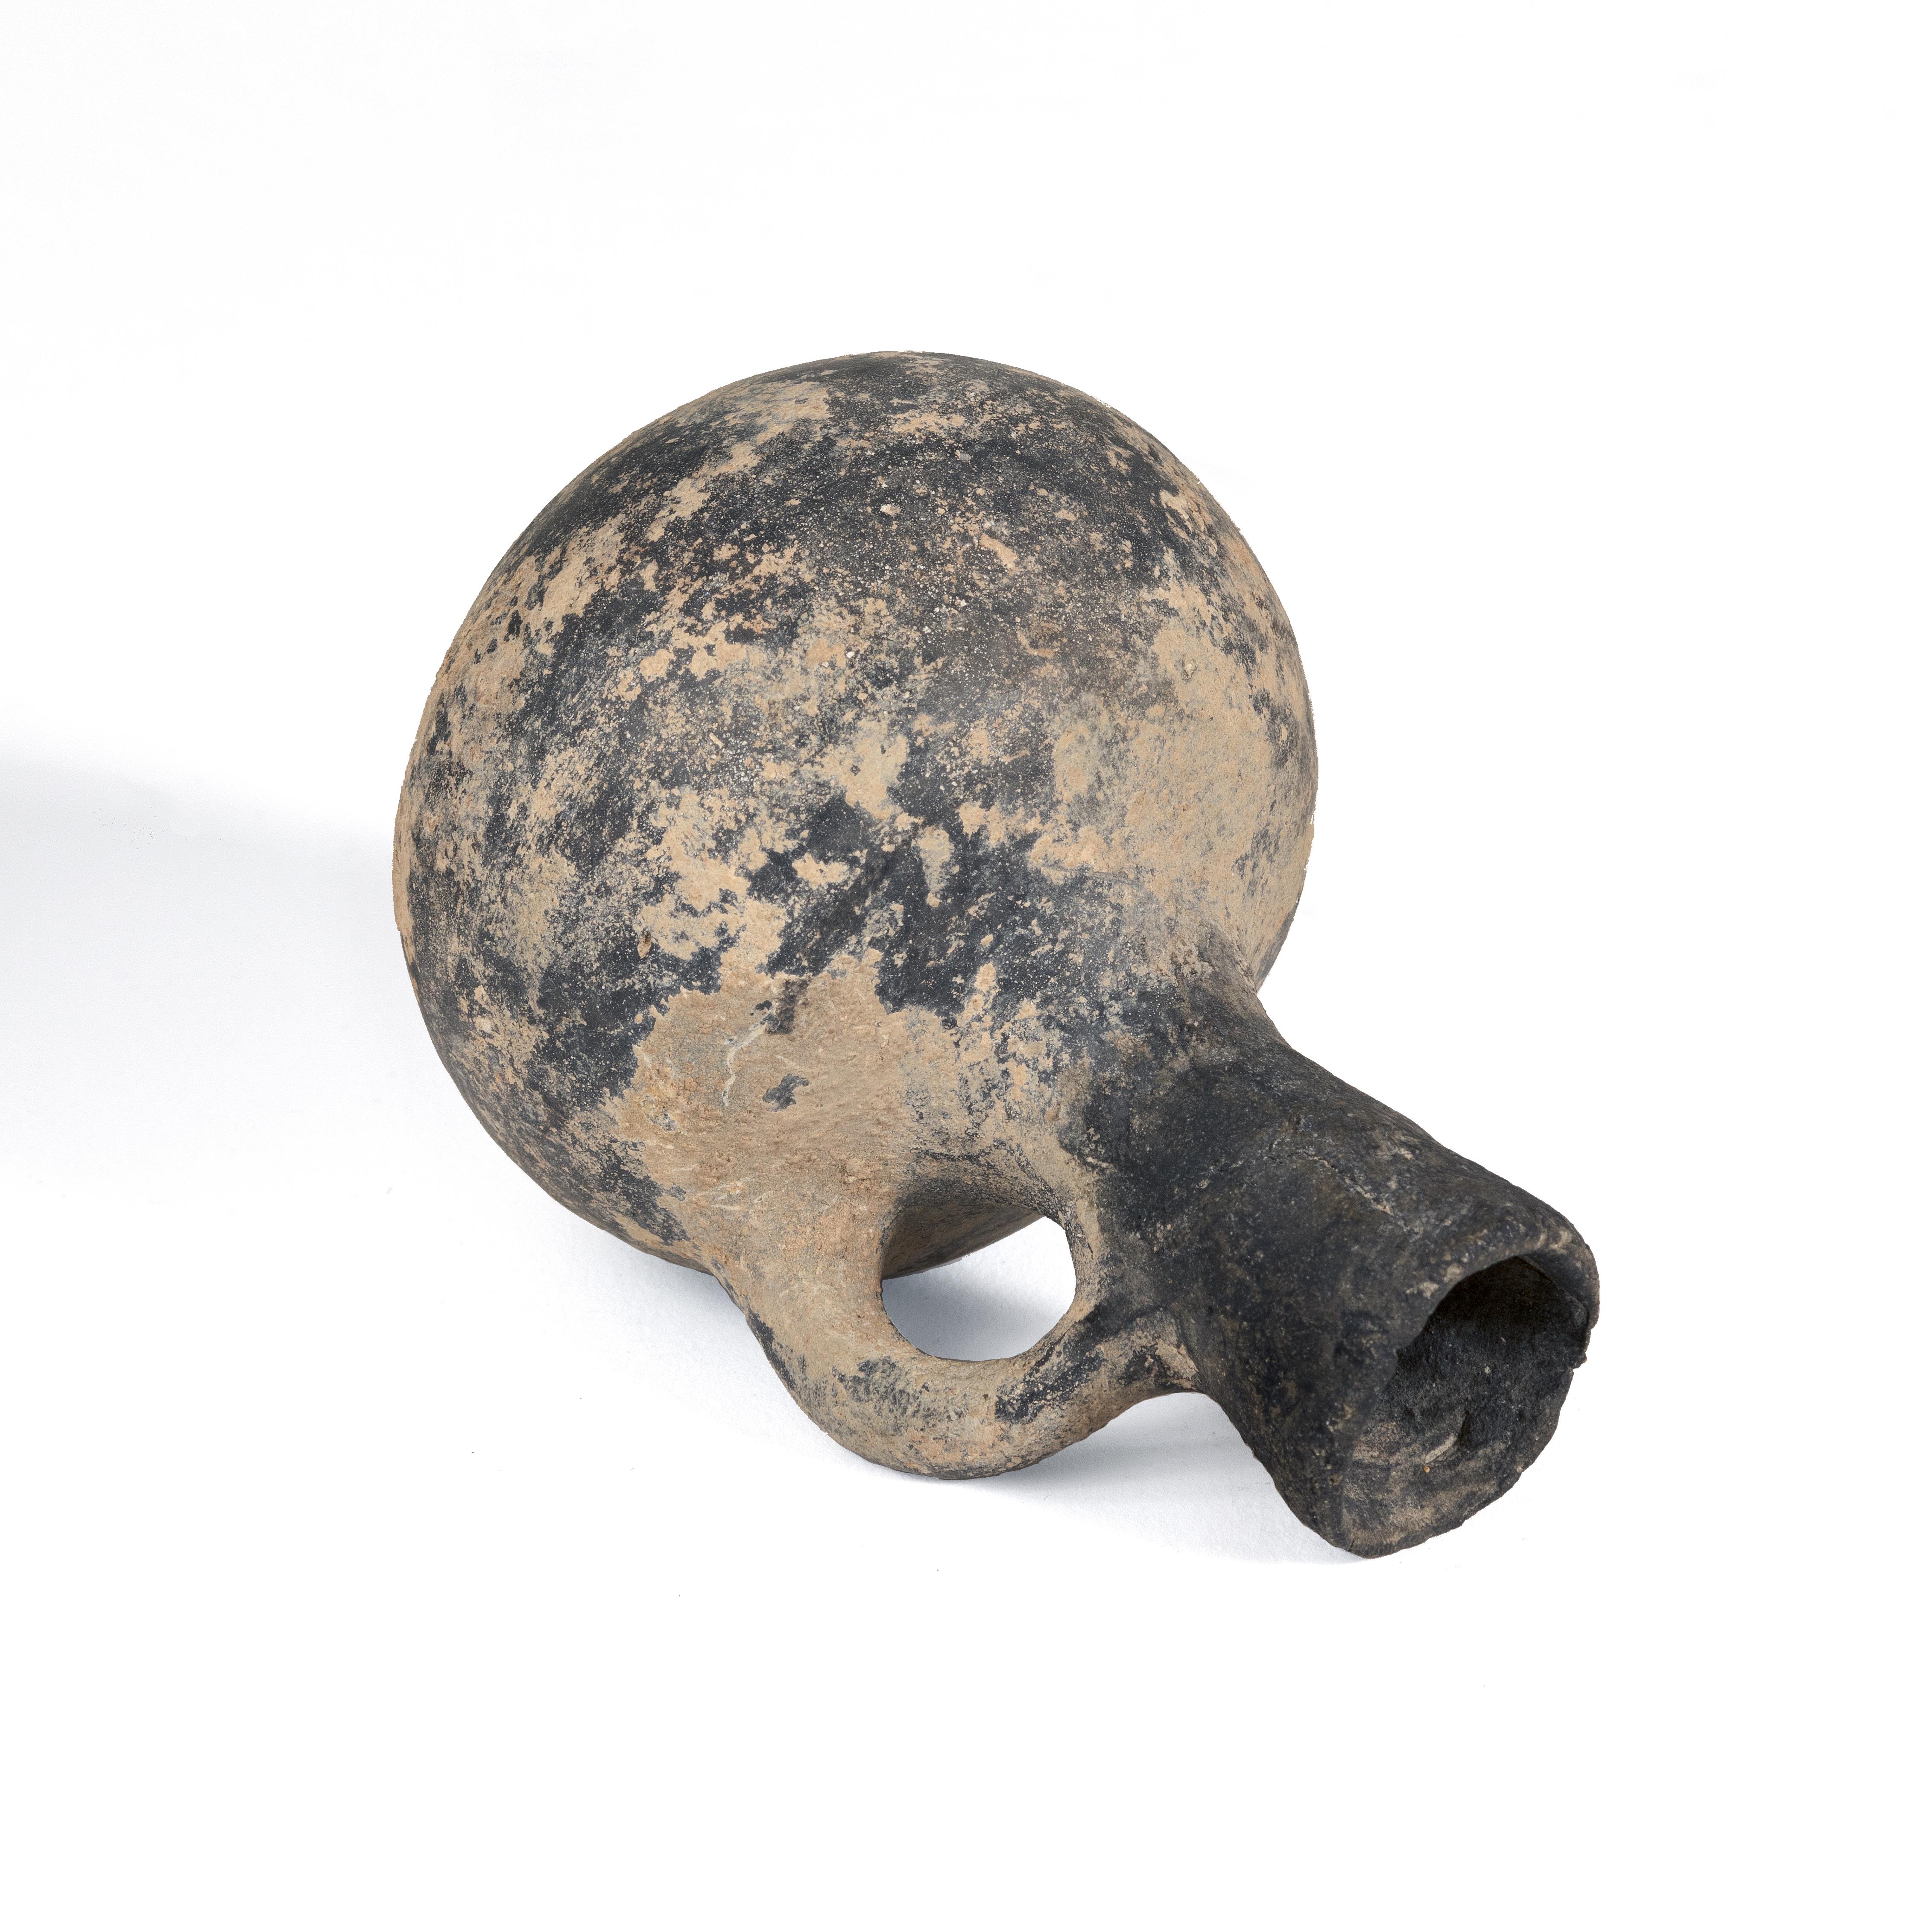 4x3
Céramique

Ancienne cruche à parfum en argile datant de l'âge du fer, découverte à Jérusalem.